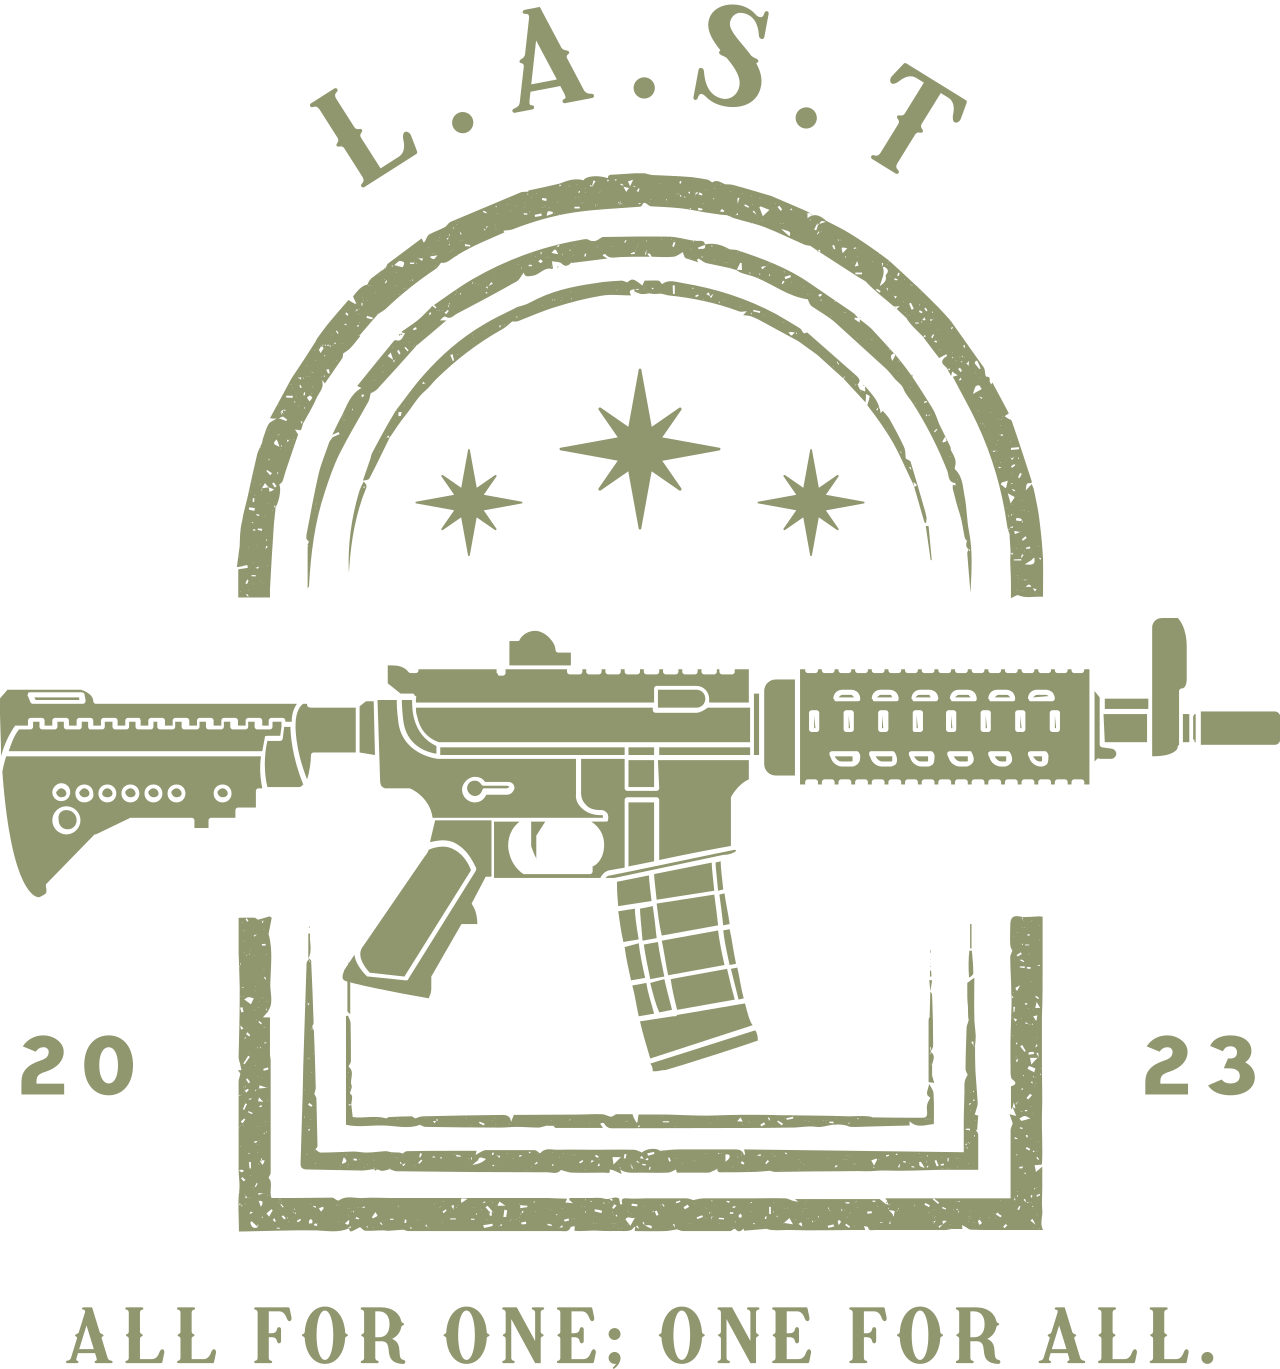 L.A.S.T's logo